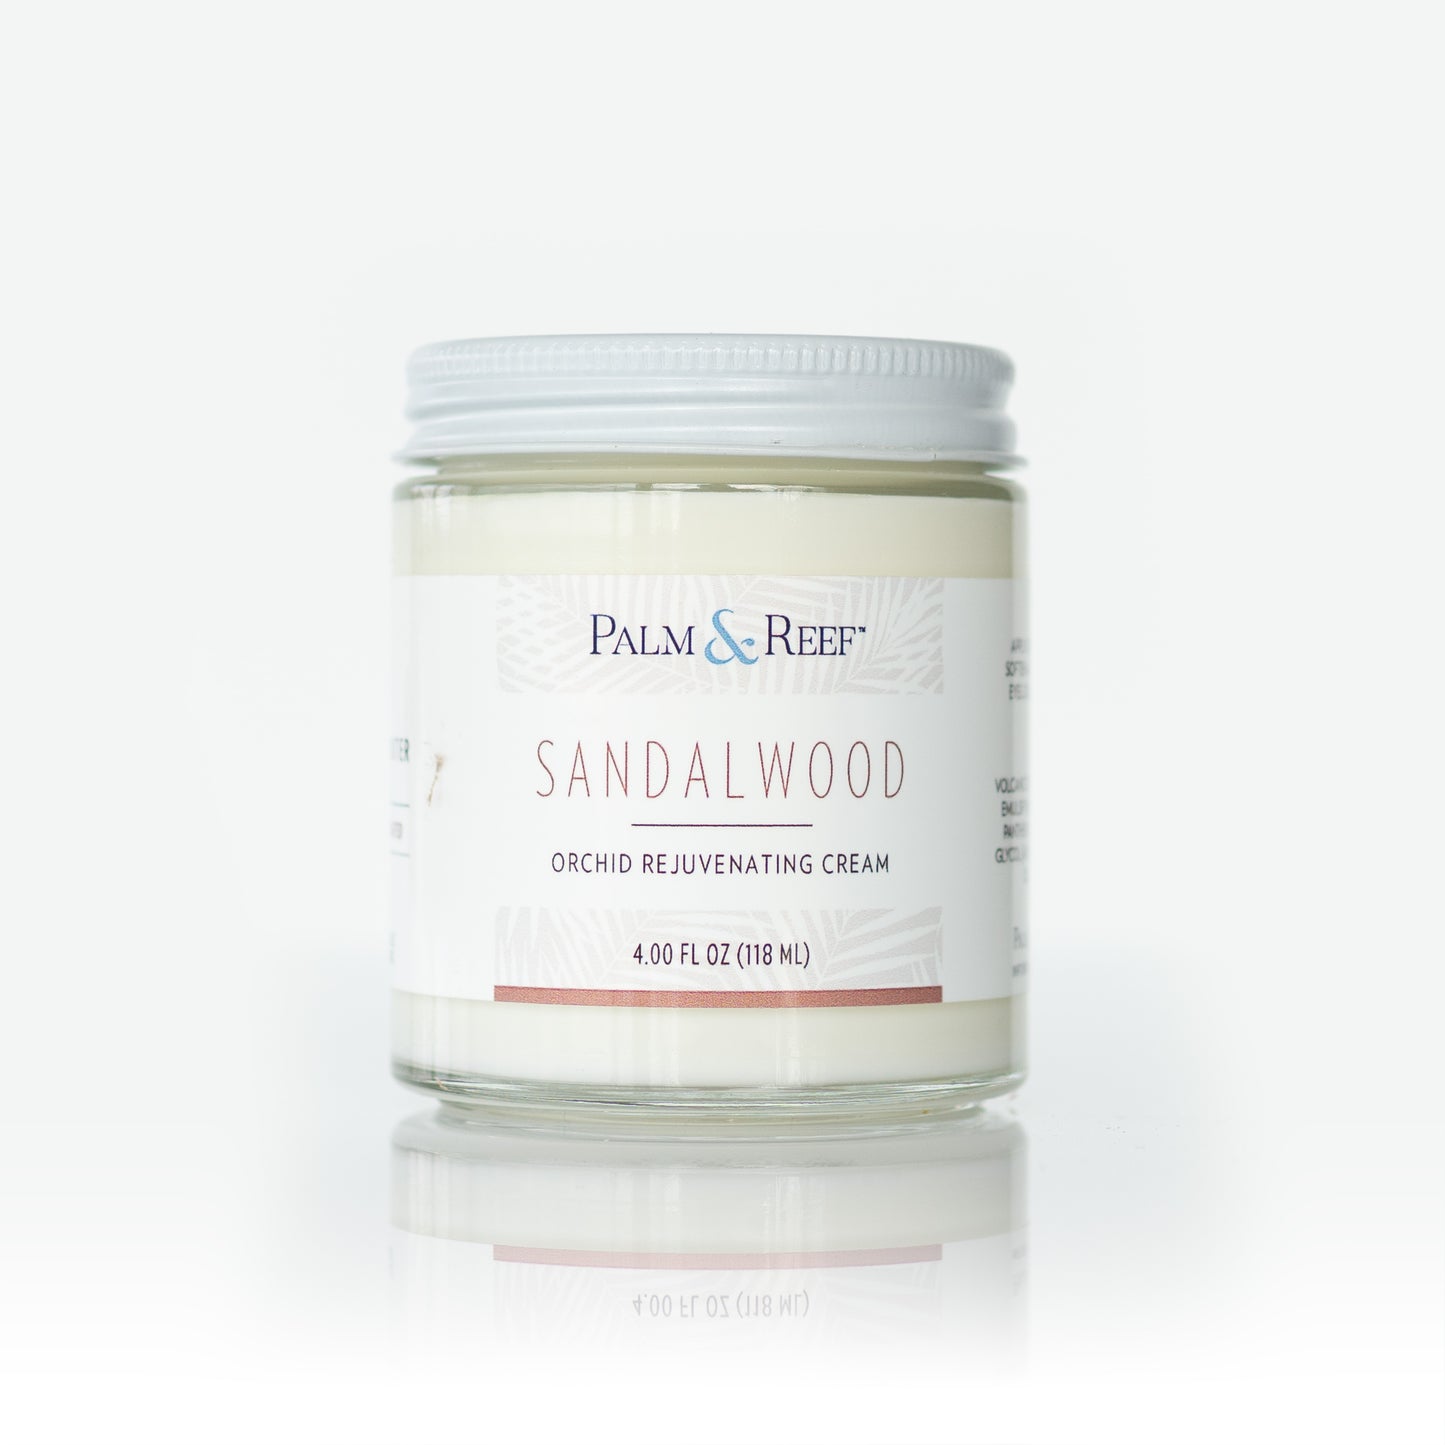 Orchid Rejuvenating Cream – Sandalwood scent